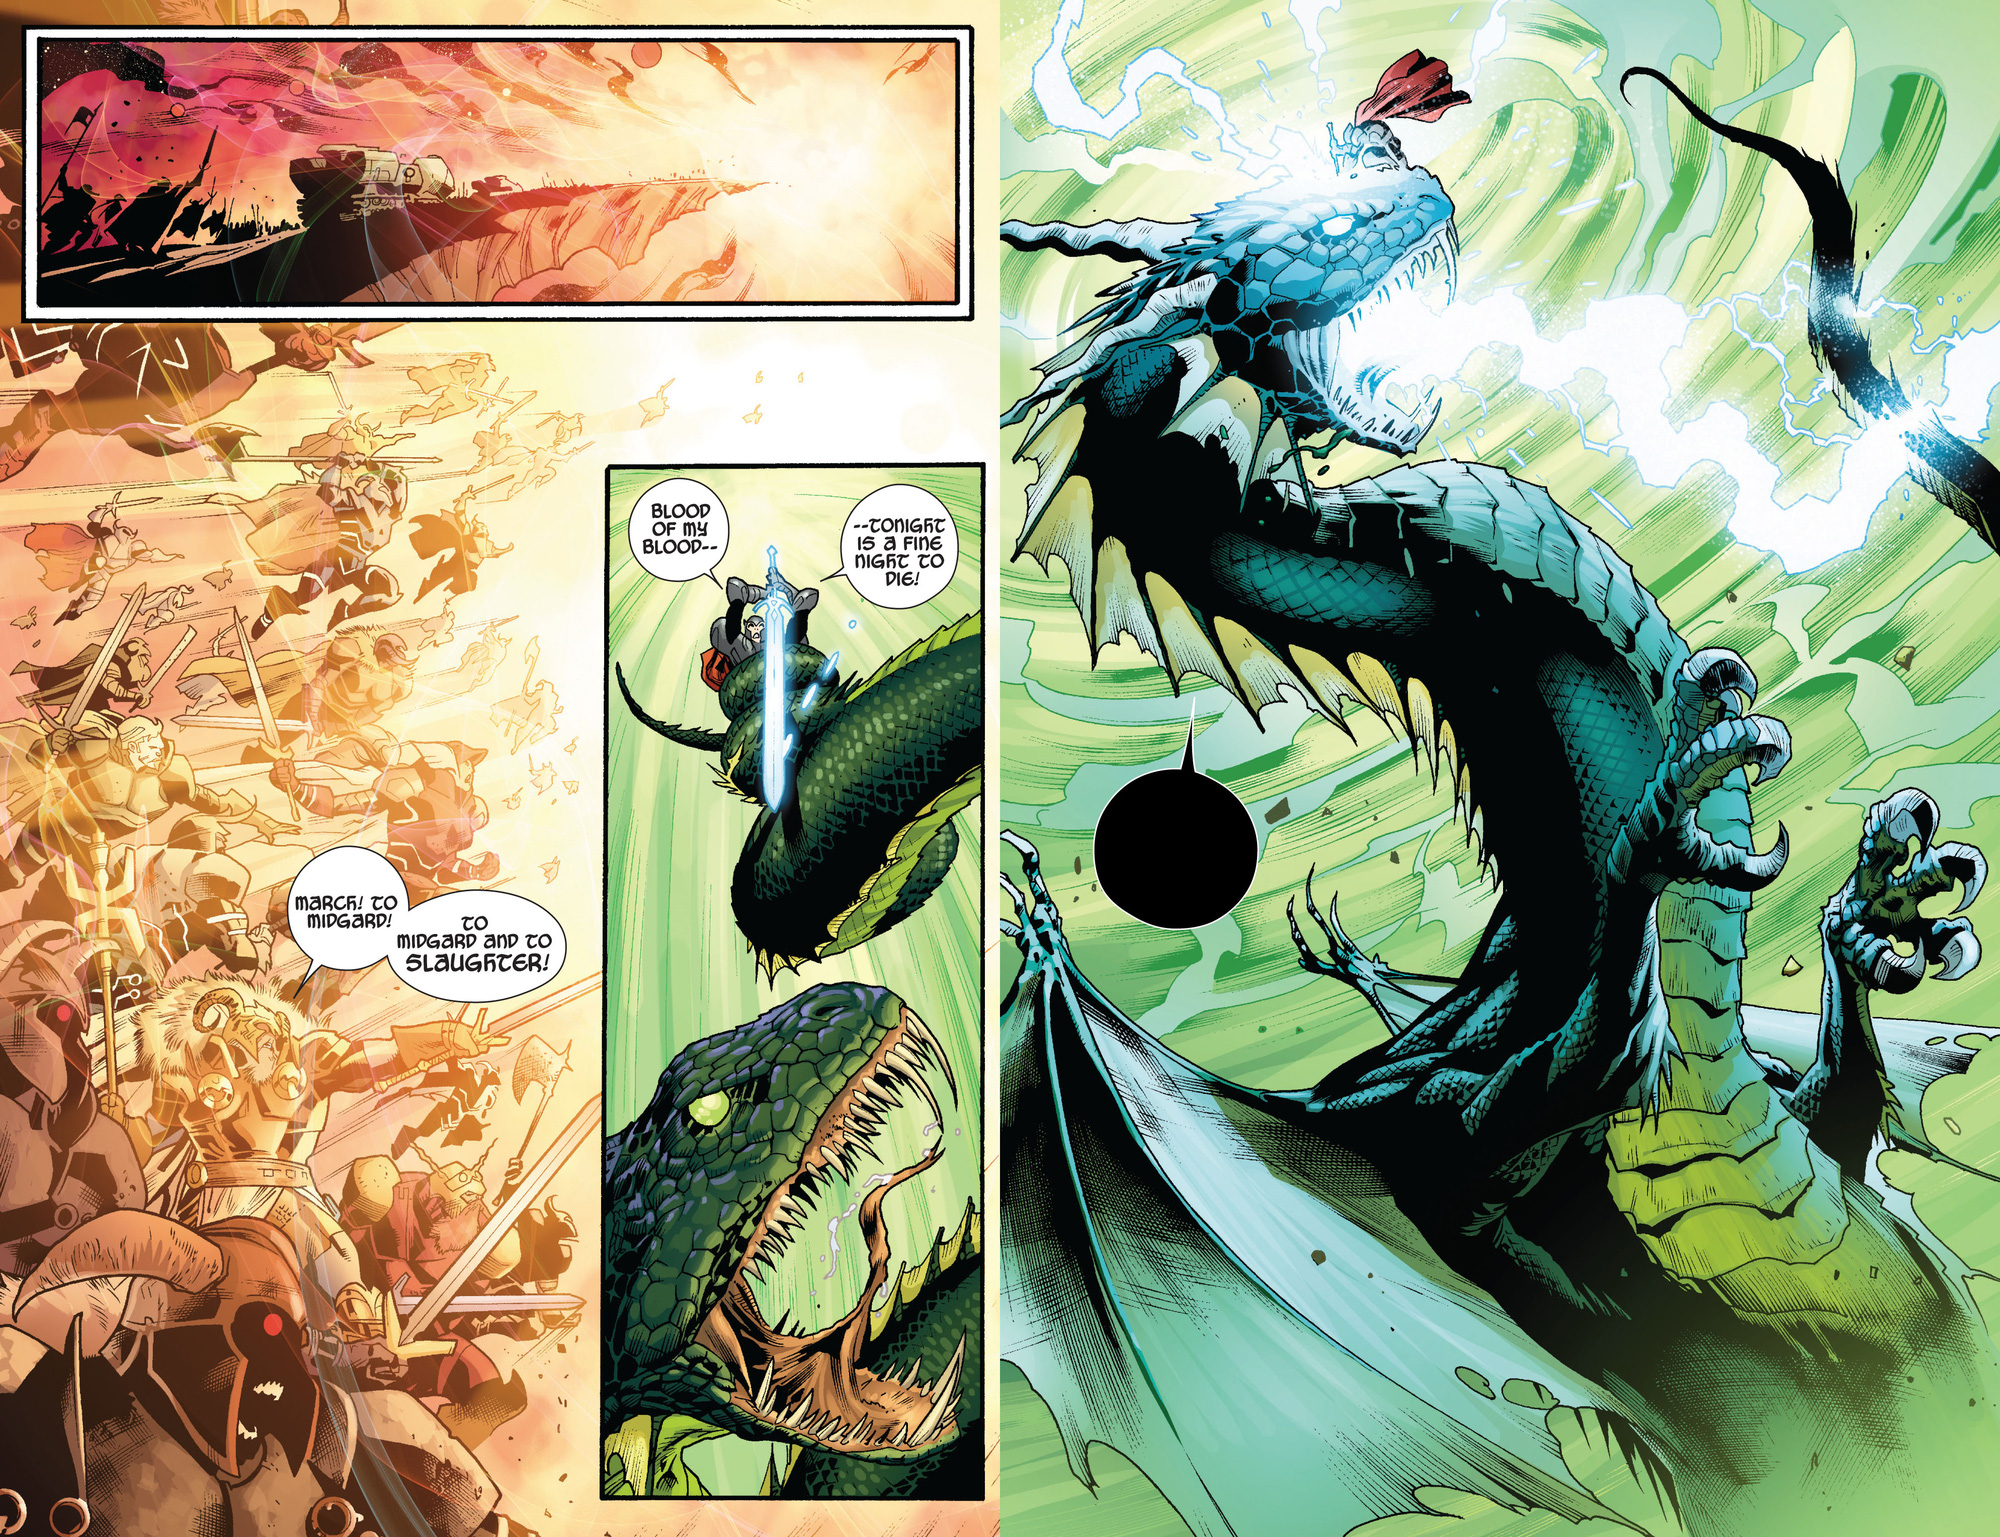 Marvel Comics: Tìm hiểu về thanh thần kiếm Odinsword - 1 trong những bảo khí mạnh nhất Asgard - Ảnh 4.